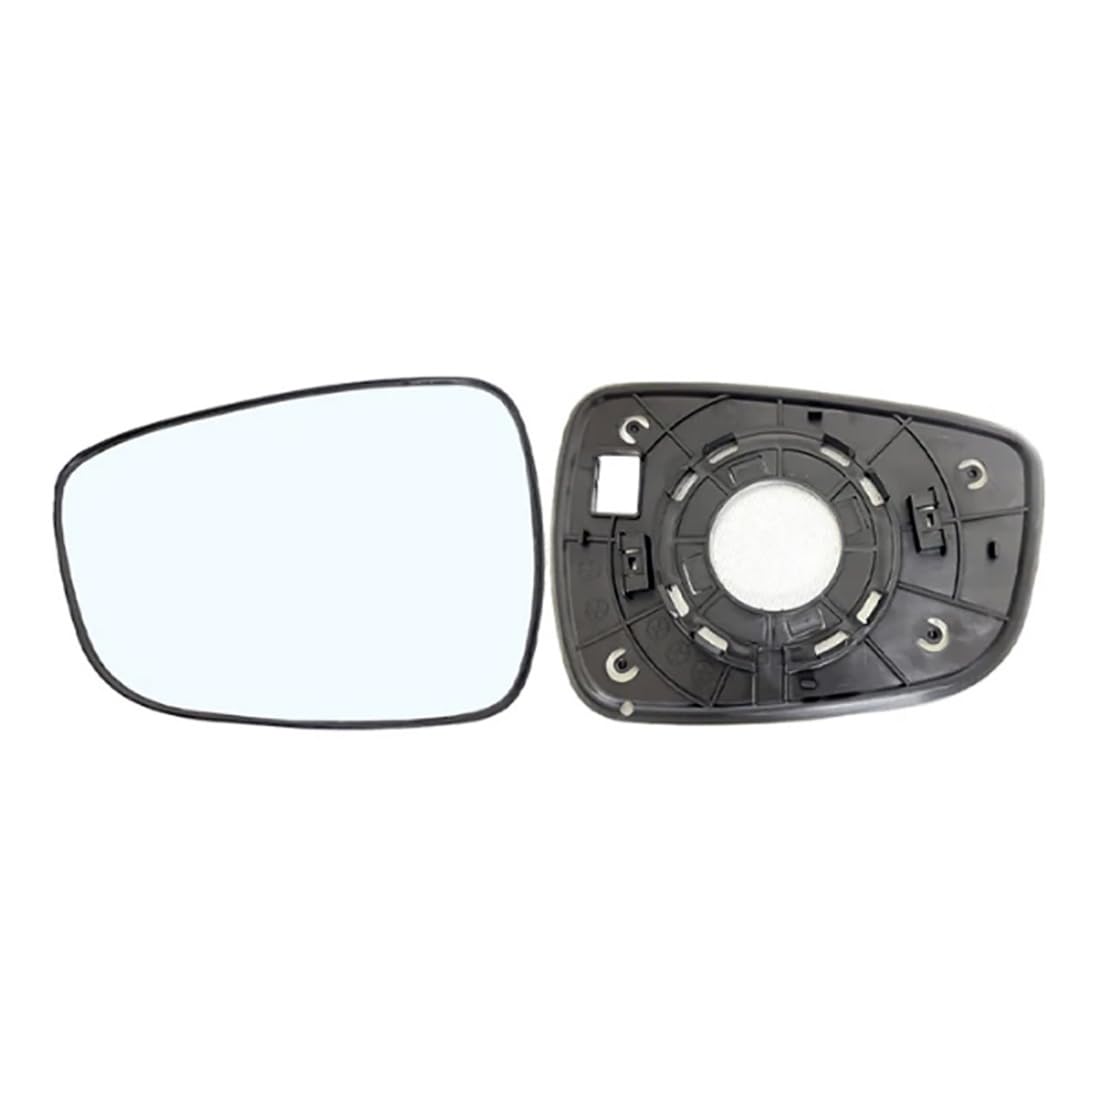 Beheizter Autorückspiegel für Hyundai i30 2013-2015,beschlagfreier Rückspiegel,Seitenspiegelglas Fürs Auto,Driver side von Zyfwzc